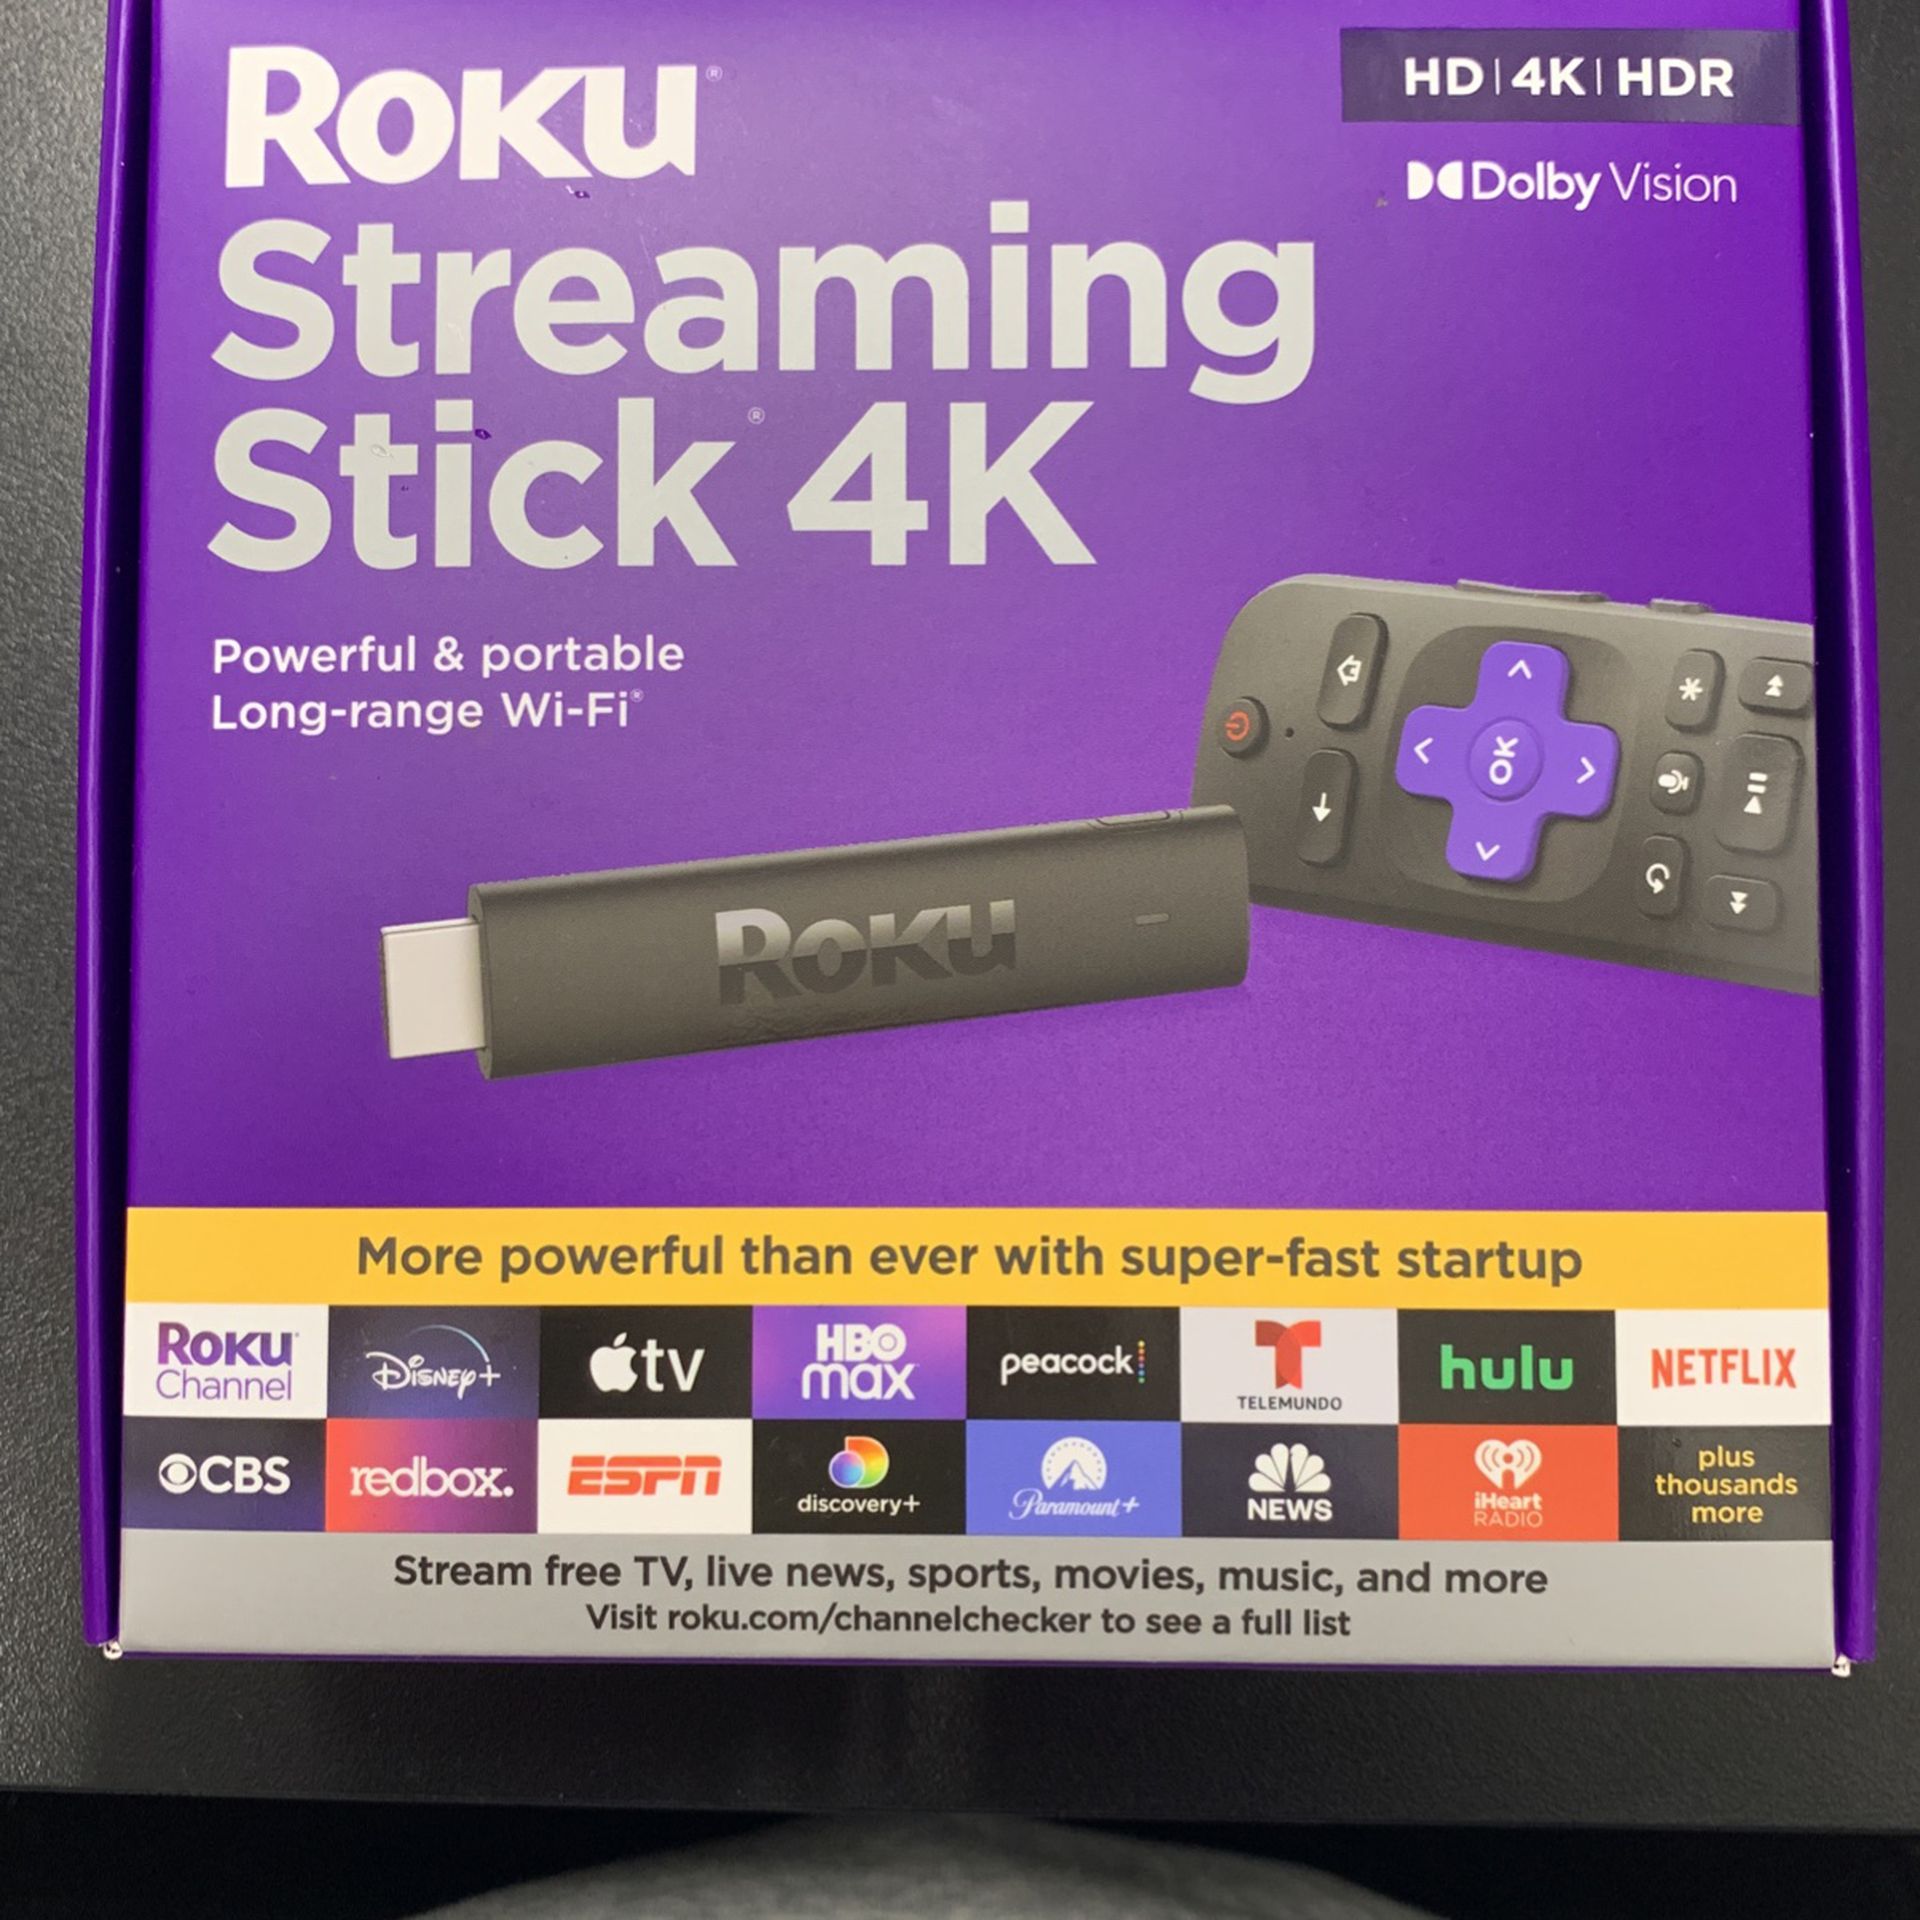 Roku Streaming stick 4k